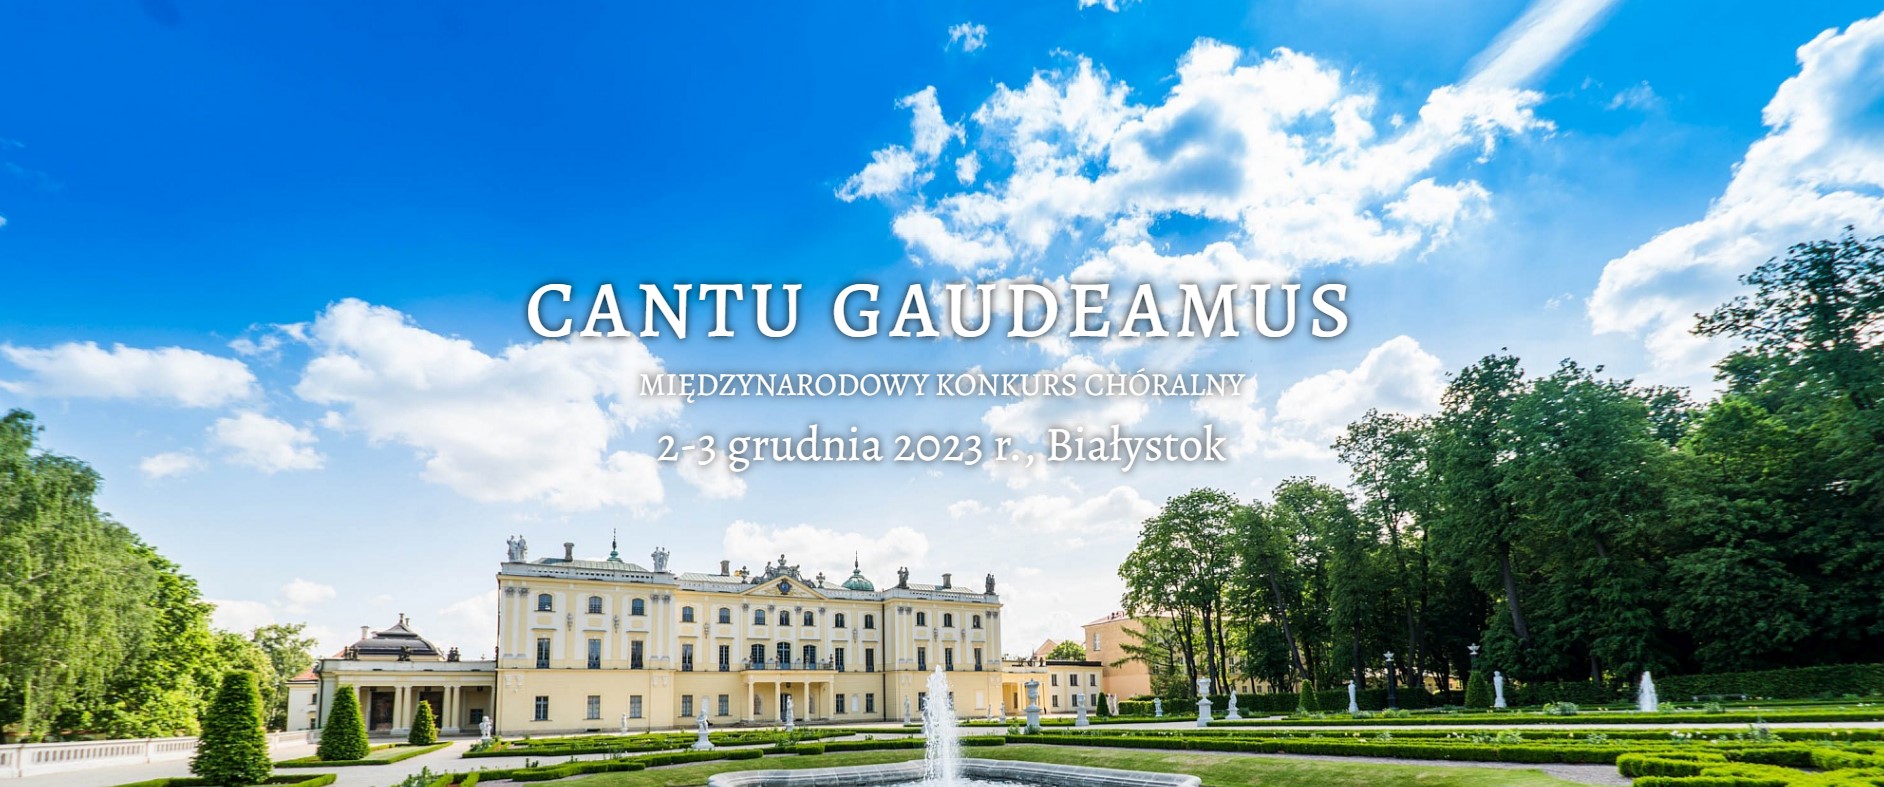 Międzynarodowy Konkurs Chóralny "Cantu Gaudeamus" w Białymstoku